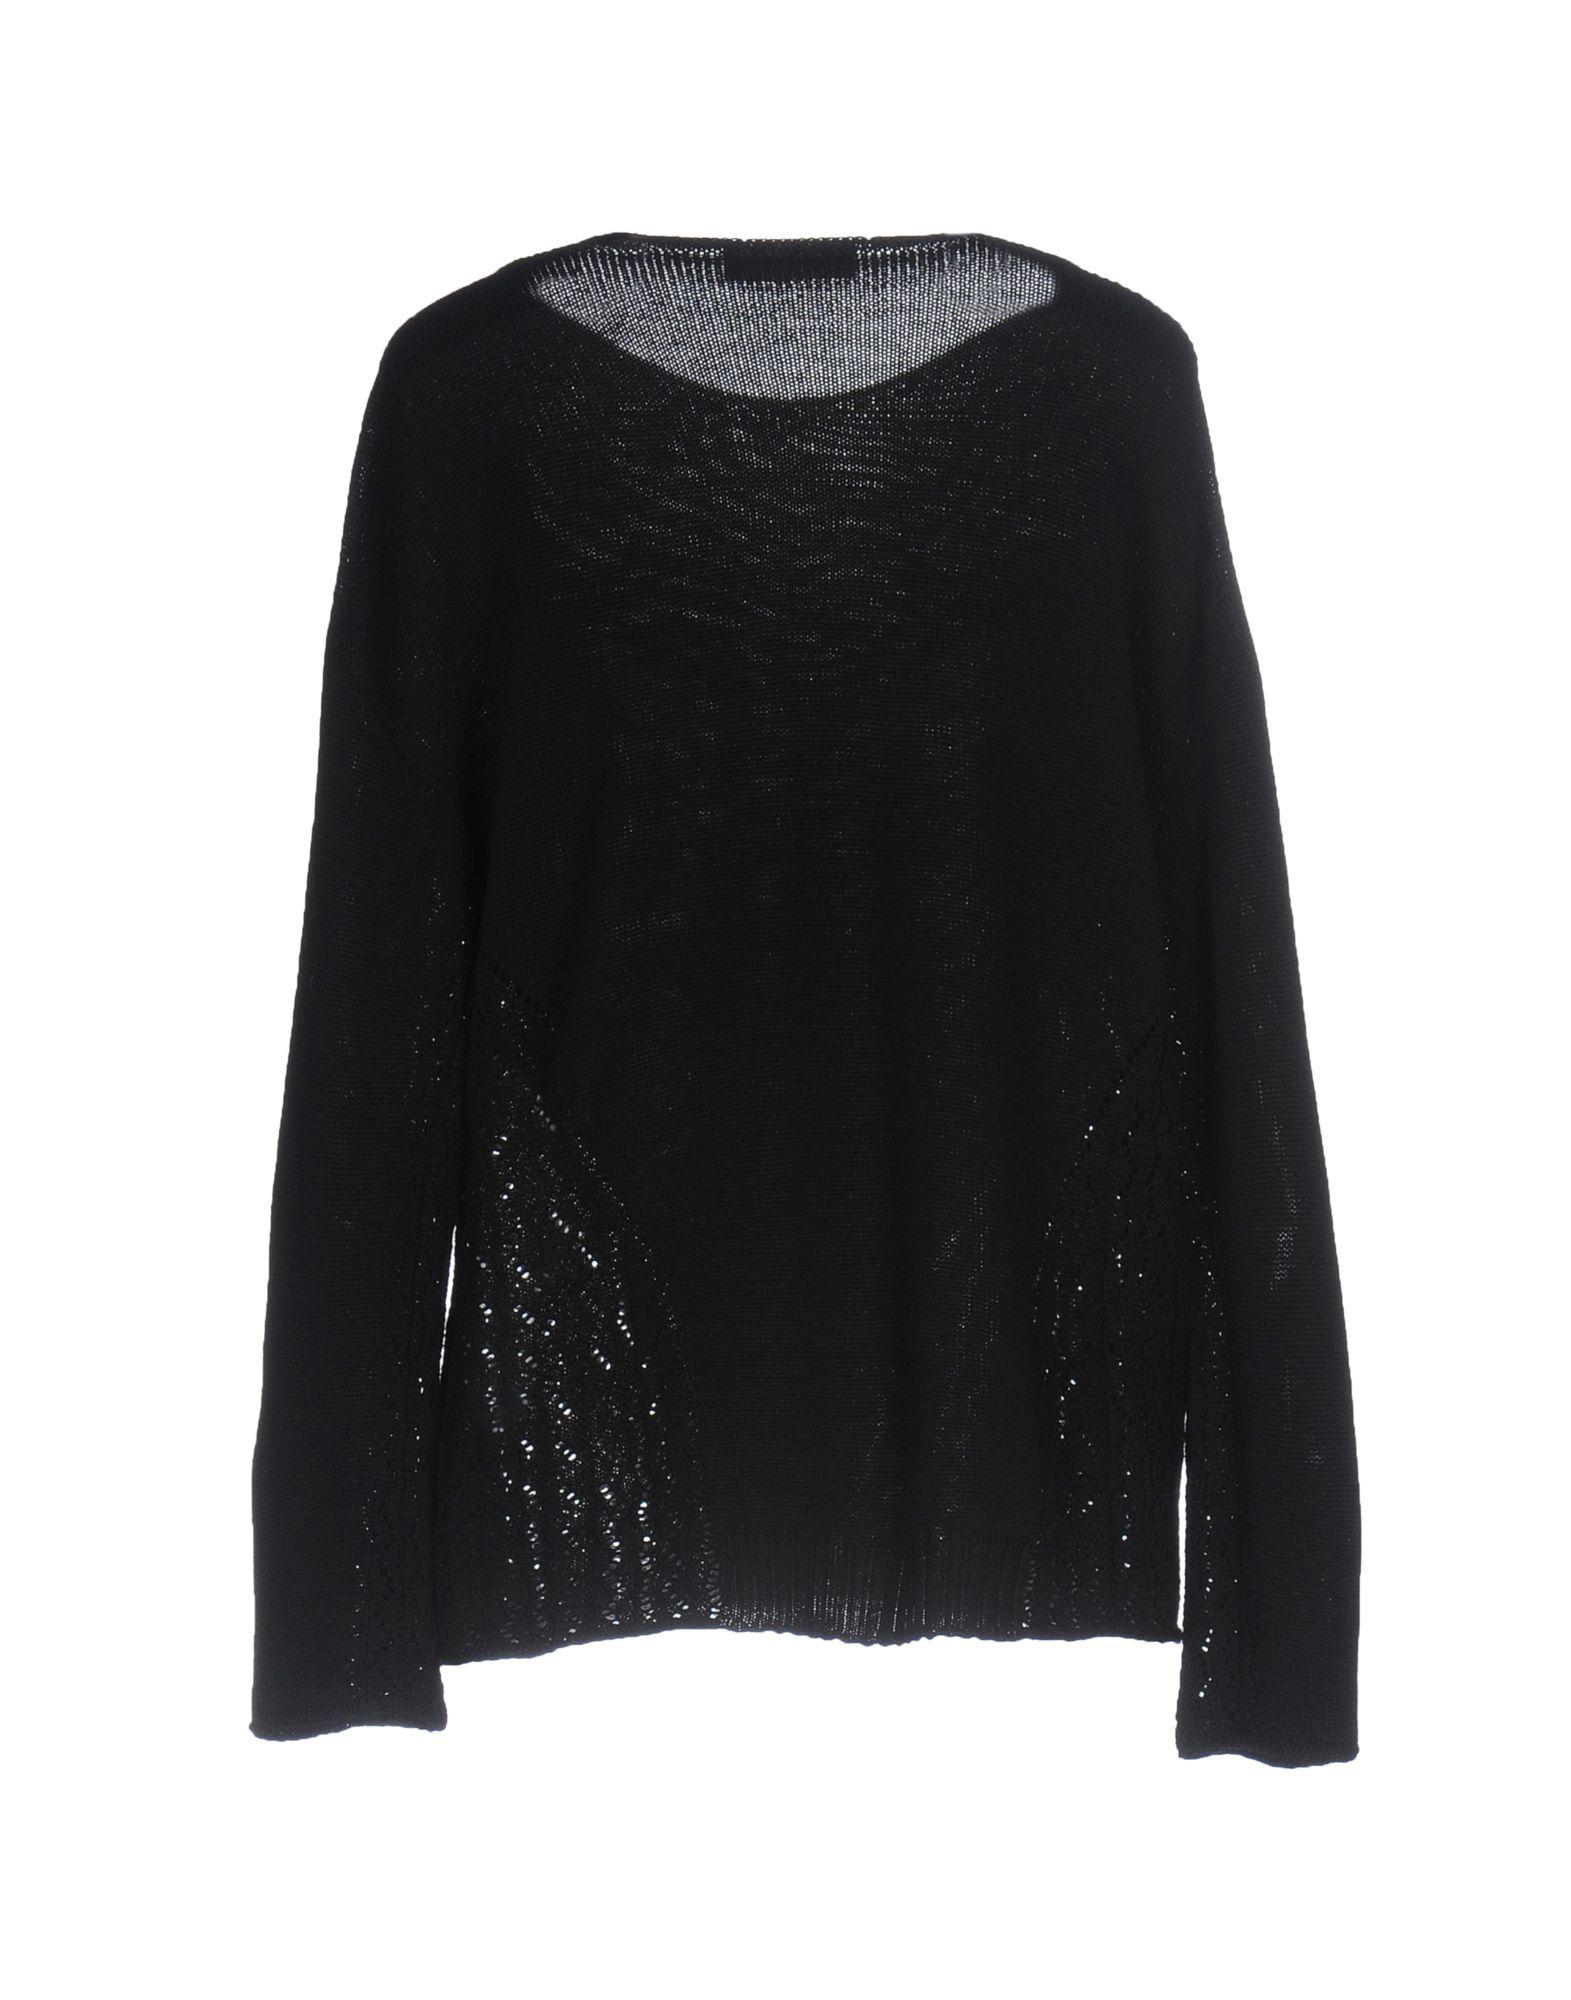 Stefanel Wool Sweater in Black - Lyst